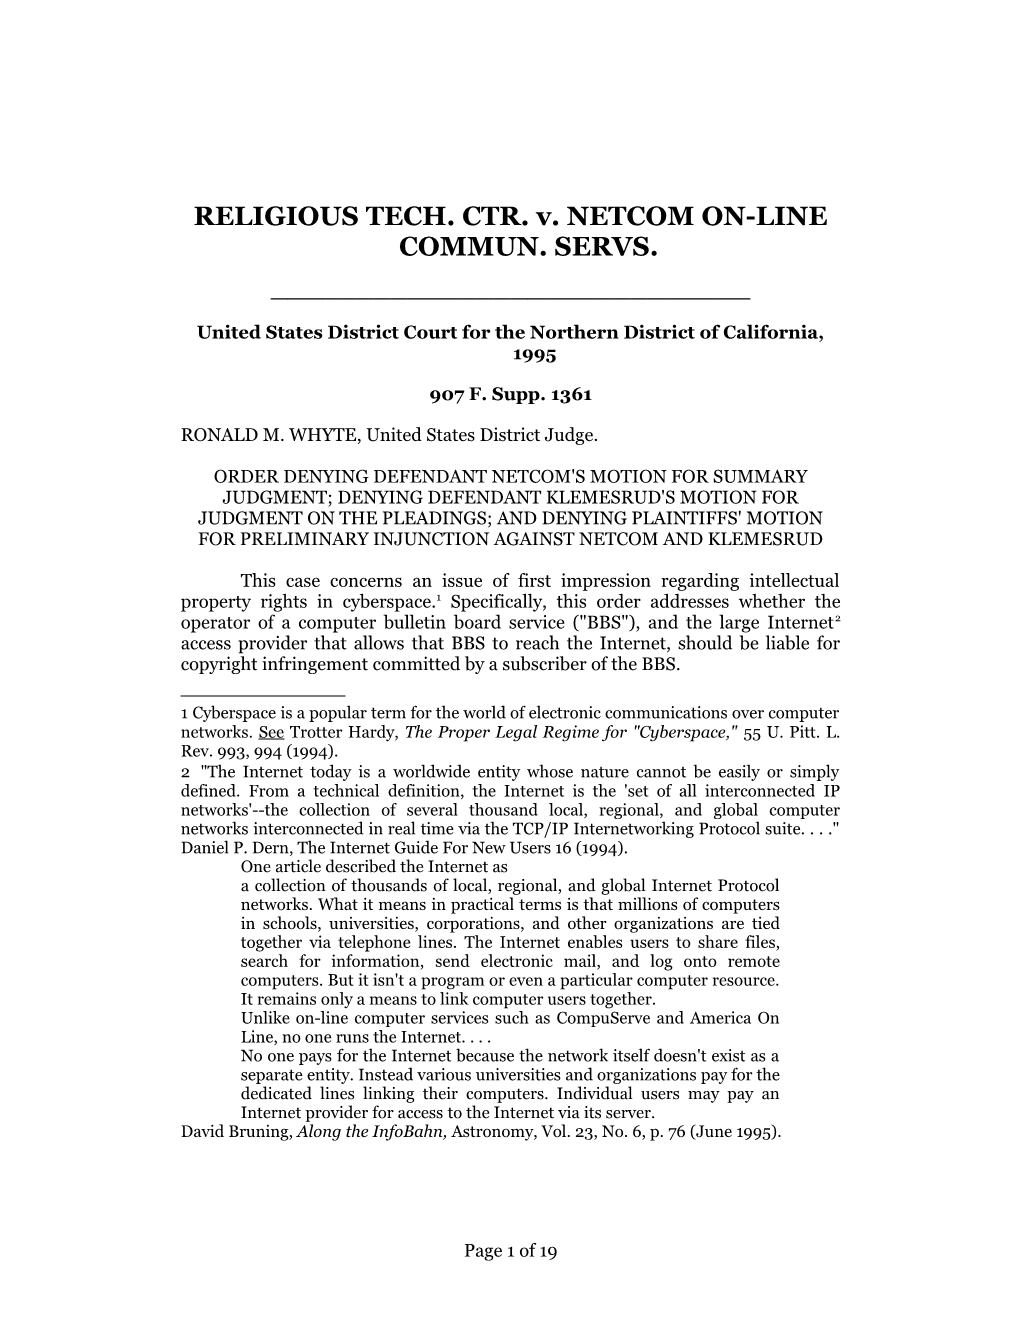 Religious Tech Ctr V. Netcom, 907 F. Supp. 1361 (1995)